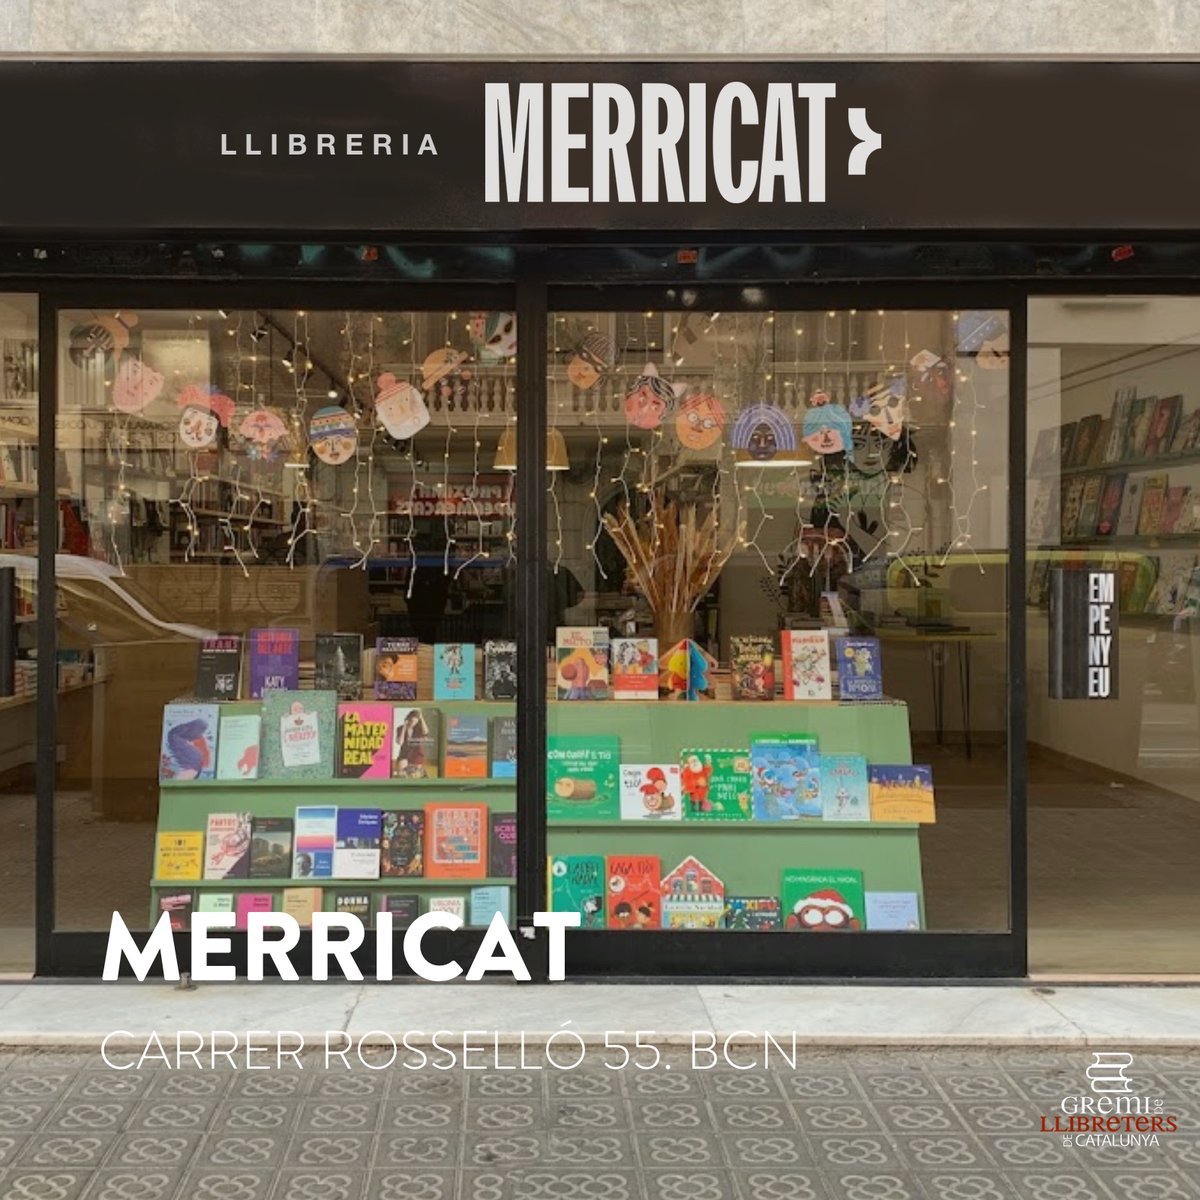 Des del Gremi de Llibreters de Catalunya volem felicitar de tot cor a la Llibreria @LL_Merricat de #Barcelona que avui celebra el seu 2⃣n aniversari! Per molts anys i molts llibres! 📚❤️ #Catalunya #llibreries